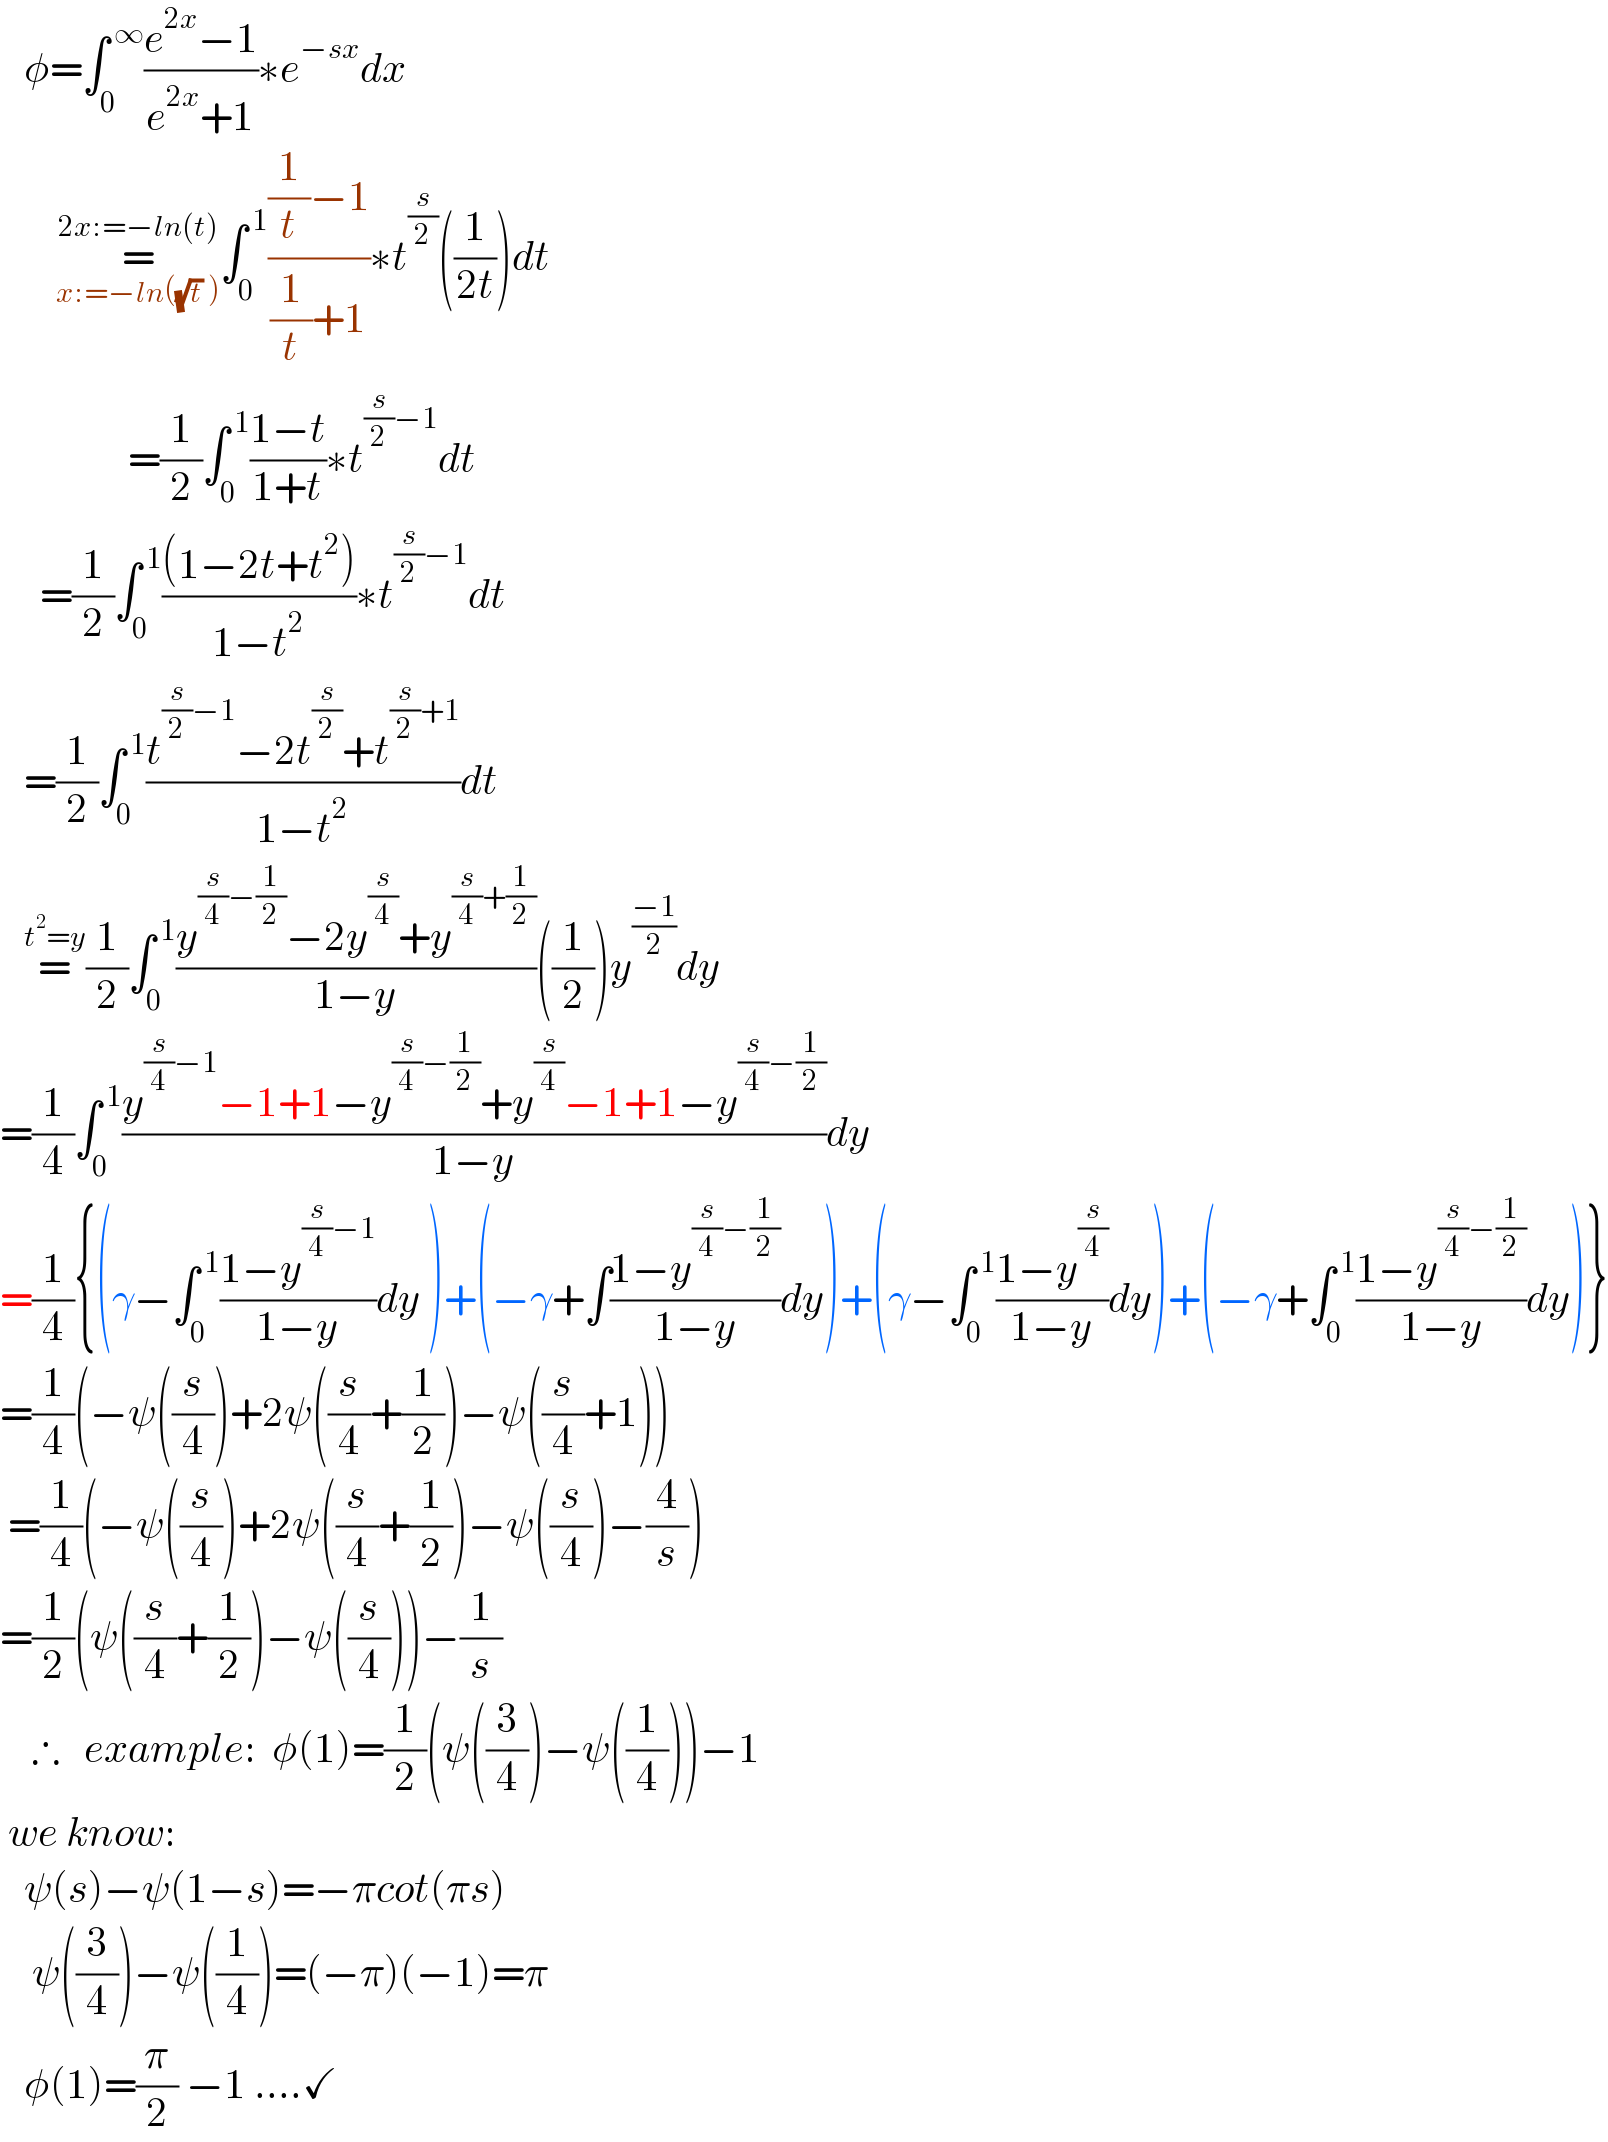    φ=∫_0 ^( ∞) ((e^(2x) −1)/(e^(2x) +1))∗e^(−sx) dx         =_(x:=−ln((√t) )) ^(2x:=−ln(t)) ∫_0 ^( 1) (((1/t)−1)/((1/t)+1))∗t^(s/2) ((1/(2t)))dt                  =(1/2)∫_0 ^( 1) ((1−t)/(1+t))∗t^((s/2)−1) dt       =(1/2)∫_0 ^( 1) (((1−2t+t^2 ))/(1−t^2 ))∗t^((s/2)−1) dt     =(1/2)∫_0 ^( 1) ((t^((s/2)−1) −2t^(s/2) +t^((s/2)+1) )/(1−t^2 ))dt     =^(t^2 =y) (1/2)∫_0 ^( 1) ((y^((s/4)−(1/2)) −2y^(s/4) +y^((s/4)+(1/2)) )/(1−y))((1/2))y^((−1)/2) dy  =(1/4)∫_0 ^( 1) ((y^((s/4)−1) −1+1−y^((s/4)−(1/2)) +y^(s/4) −1+1−y^((s/4)−(1/2)) )/(1−y))dy  =(1/4){(γ−∫_0 ^( 1) ((1−y^((s/4)−1) )/(1−y))dy )+(−γ+∫((1−y^((s/4)−(1/2)) )/(1−y))dy)+(γ−∫_0 ^( 1) ((1−y^(s/4) )/(1−y))dy)+(−γ+∫_0 ^( 1) ((1−y^((s/4)−(1/2)) )/(1−y))dy)}  =(1/4)(−ψ((s/4))+2ψ((s/4)+(1/2))−ψ((s/4)+1))   =(1/4)(−ψ((s/4))+2ψ((s/4)+(1/2))−ψ((s/4))−(4/s))  =(1/2)(ψ((s/4)+(1/2))−ψ((s/4)))−(1/s)      ∴   example:  φ(1)=(1/2)(ψ((3/4))−ψ((1/4)))−1   we know:     ψ(s)−ψ(1−s)=−πcot(πs)      ψ((3/4))−ψ((1/4))=(−π)(−1)=π     φ(1)=(π/2) −1 ....✓  